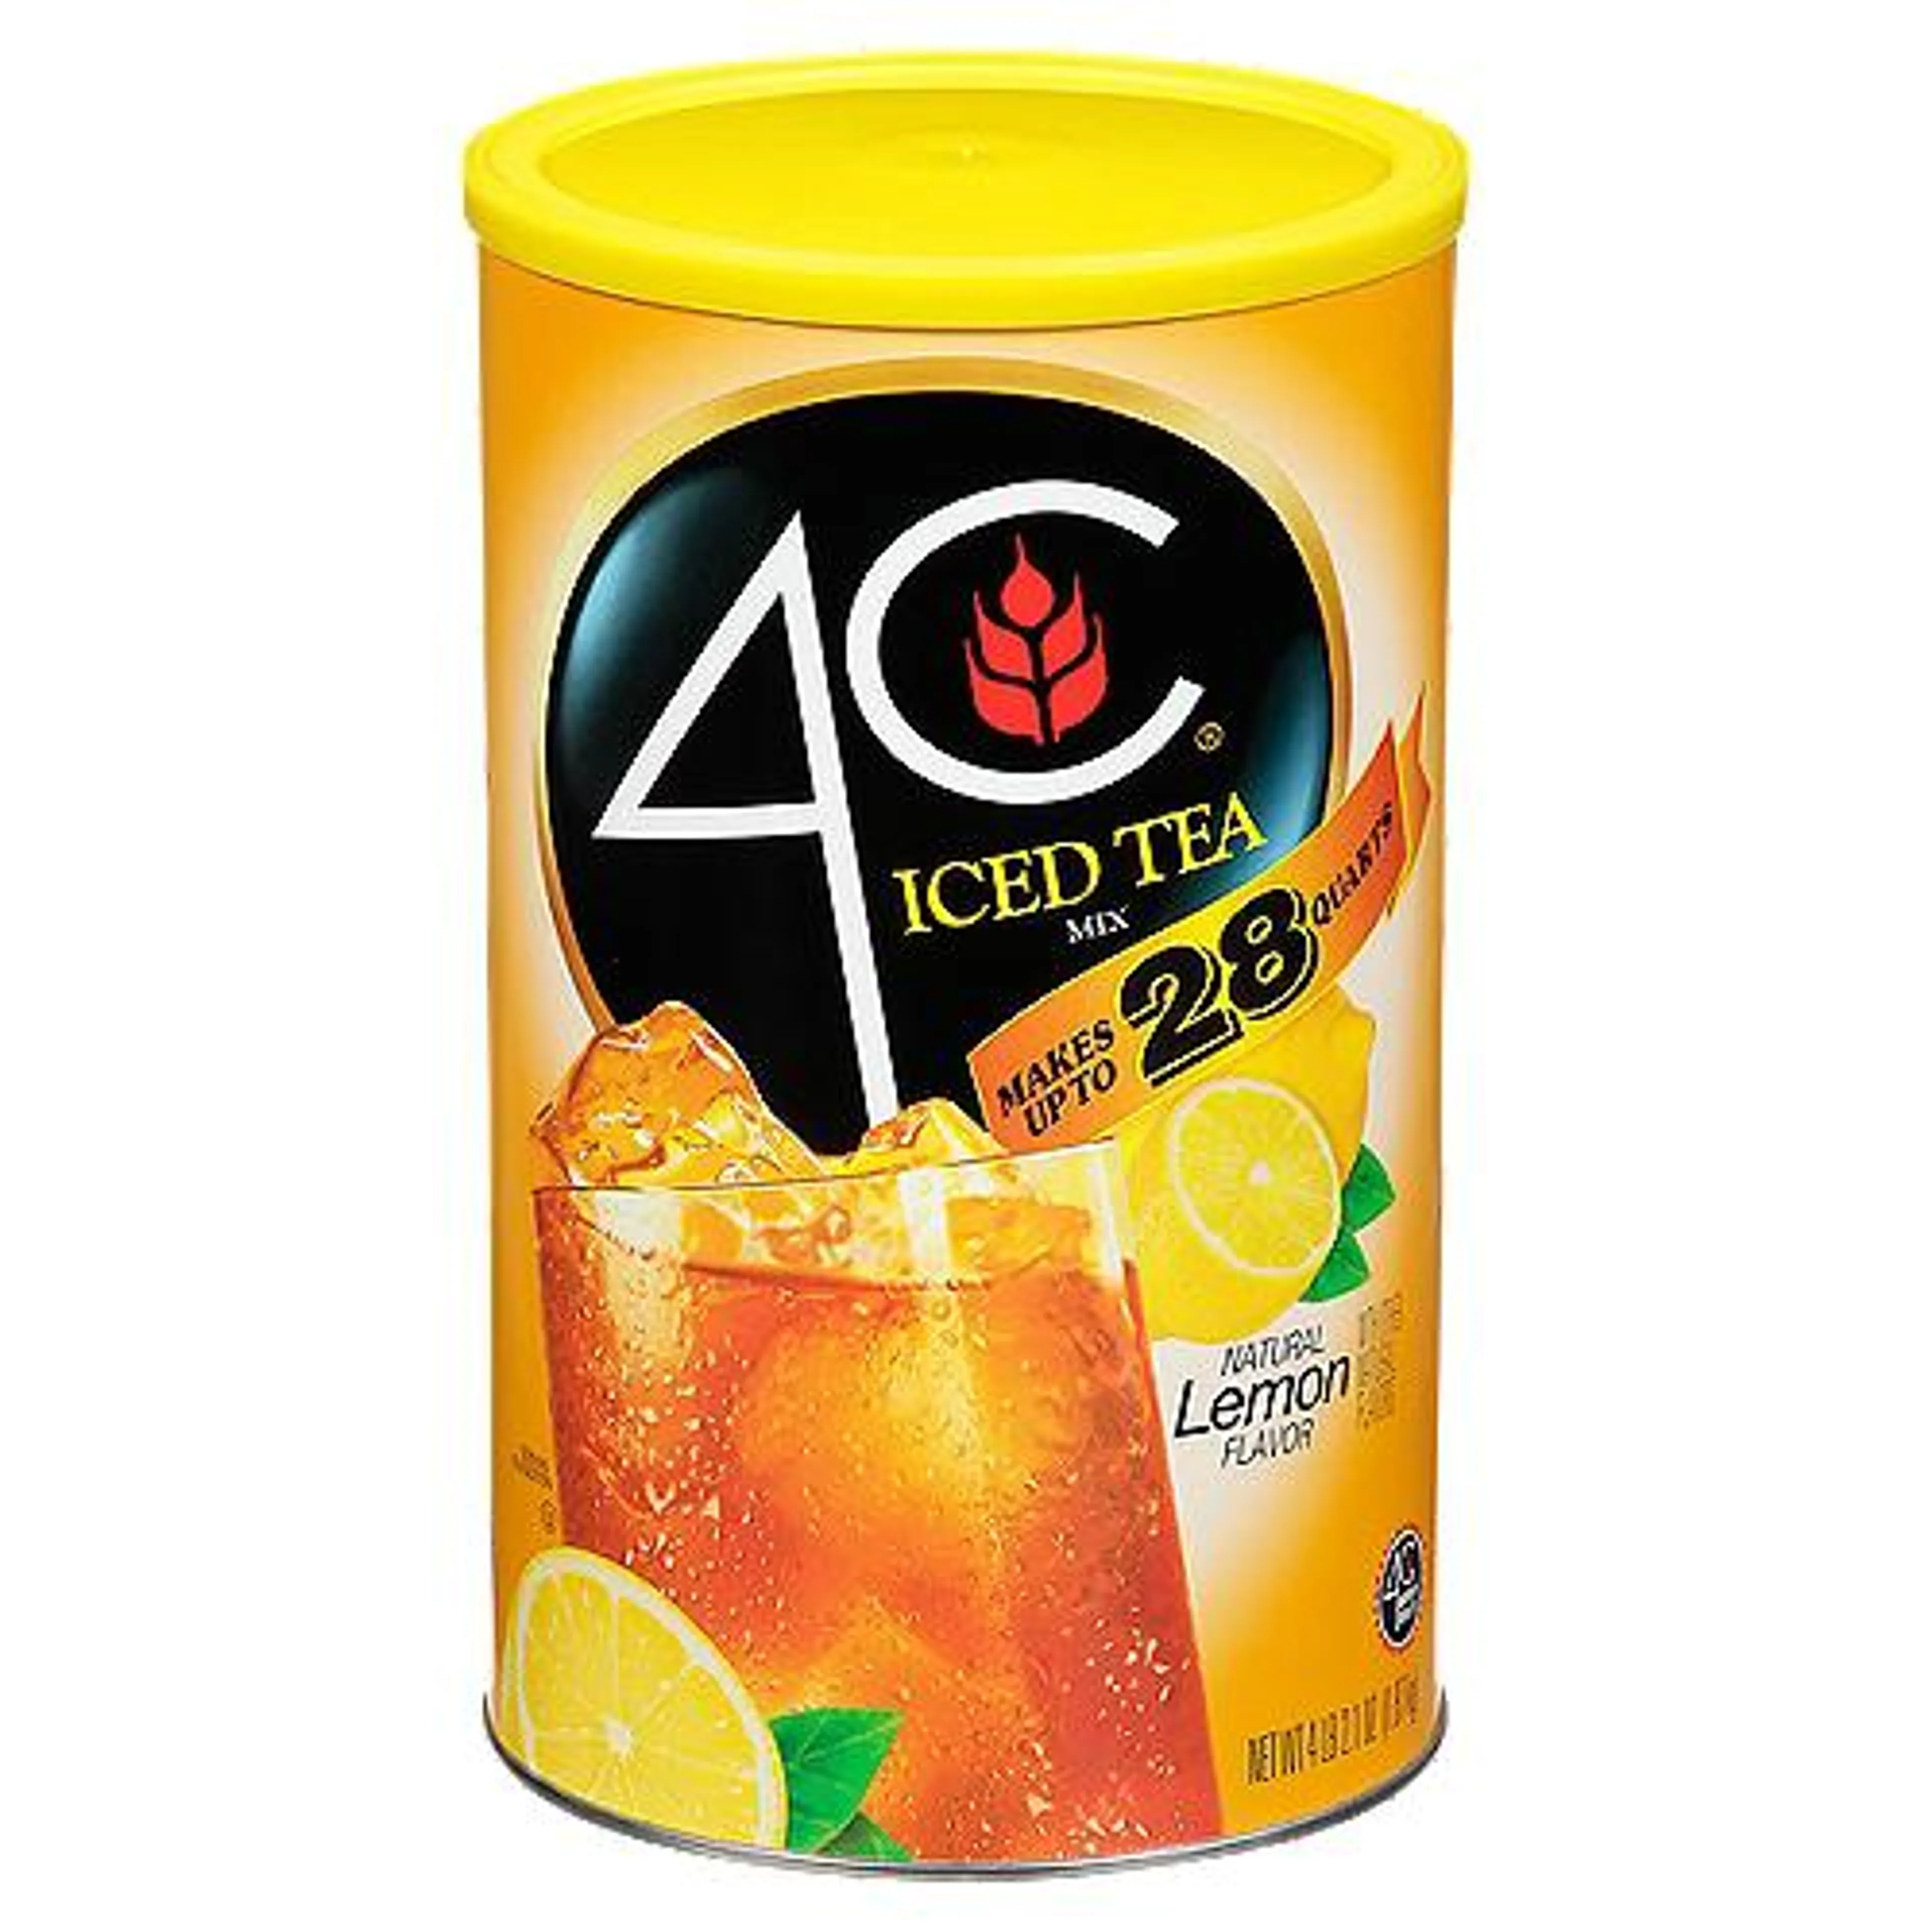 4C Natural Lemon Flavor, Iced Tea Mix, 66.1 Ounce